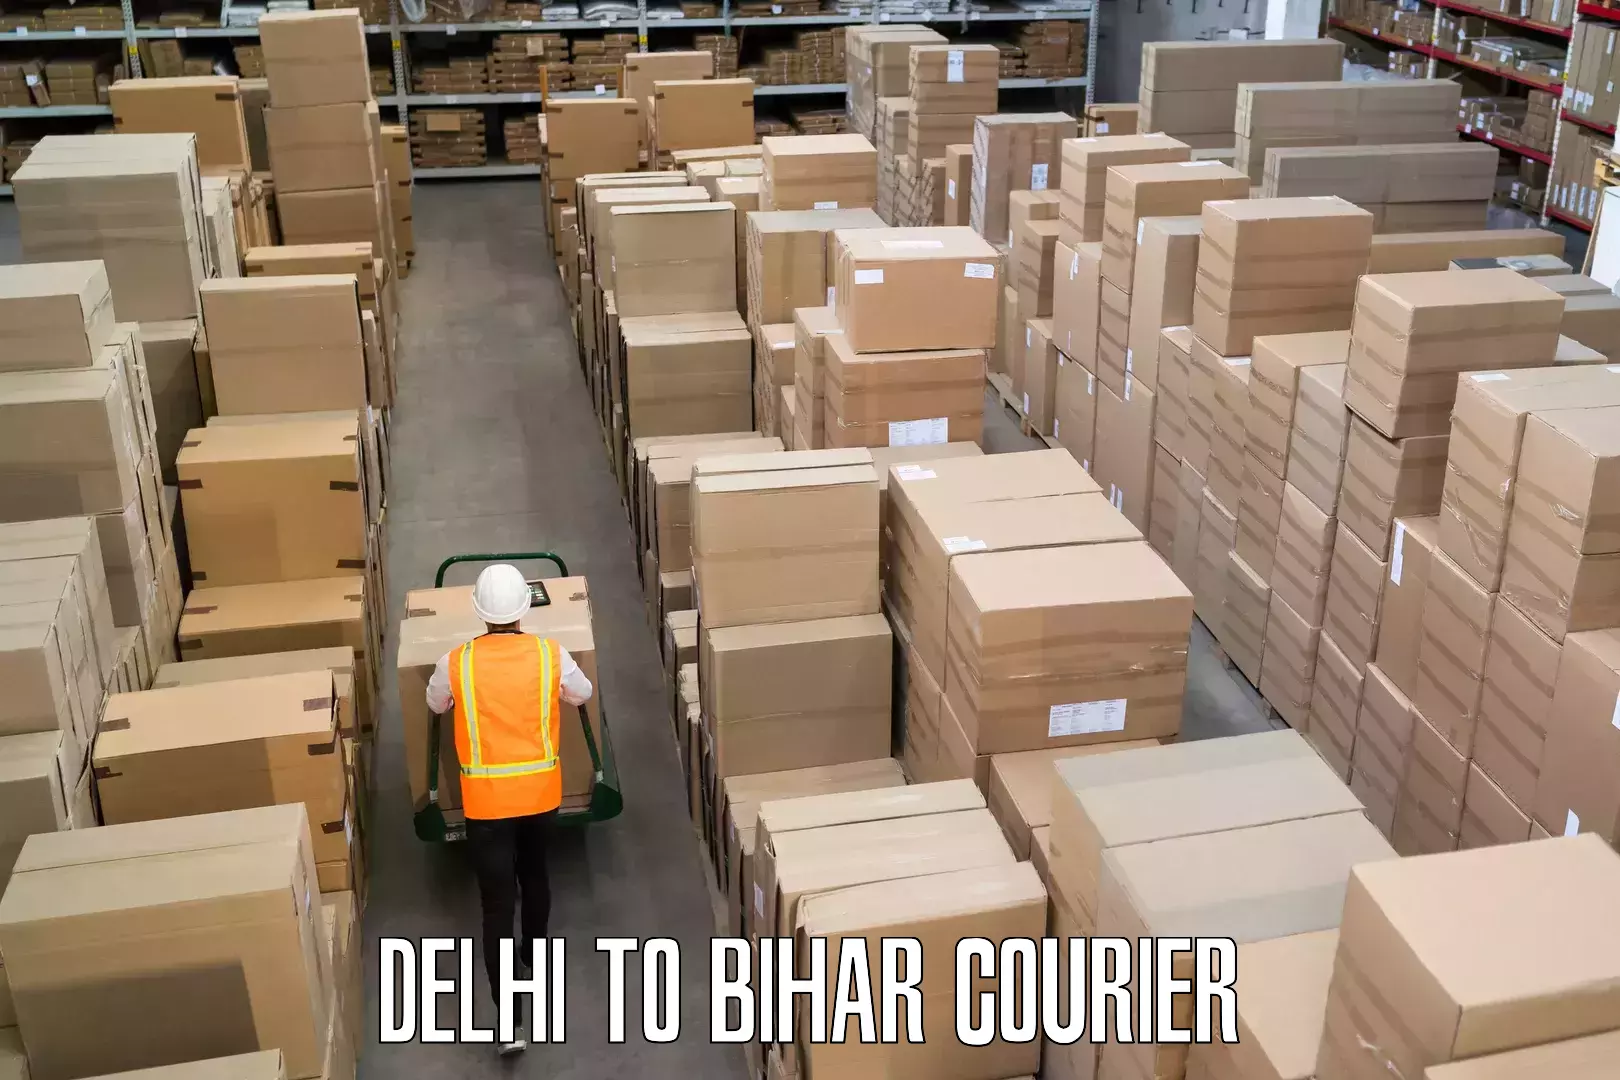 Doorstep luggage pickup in Delhi to Bihar